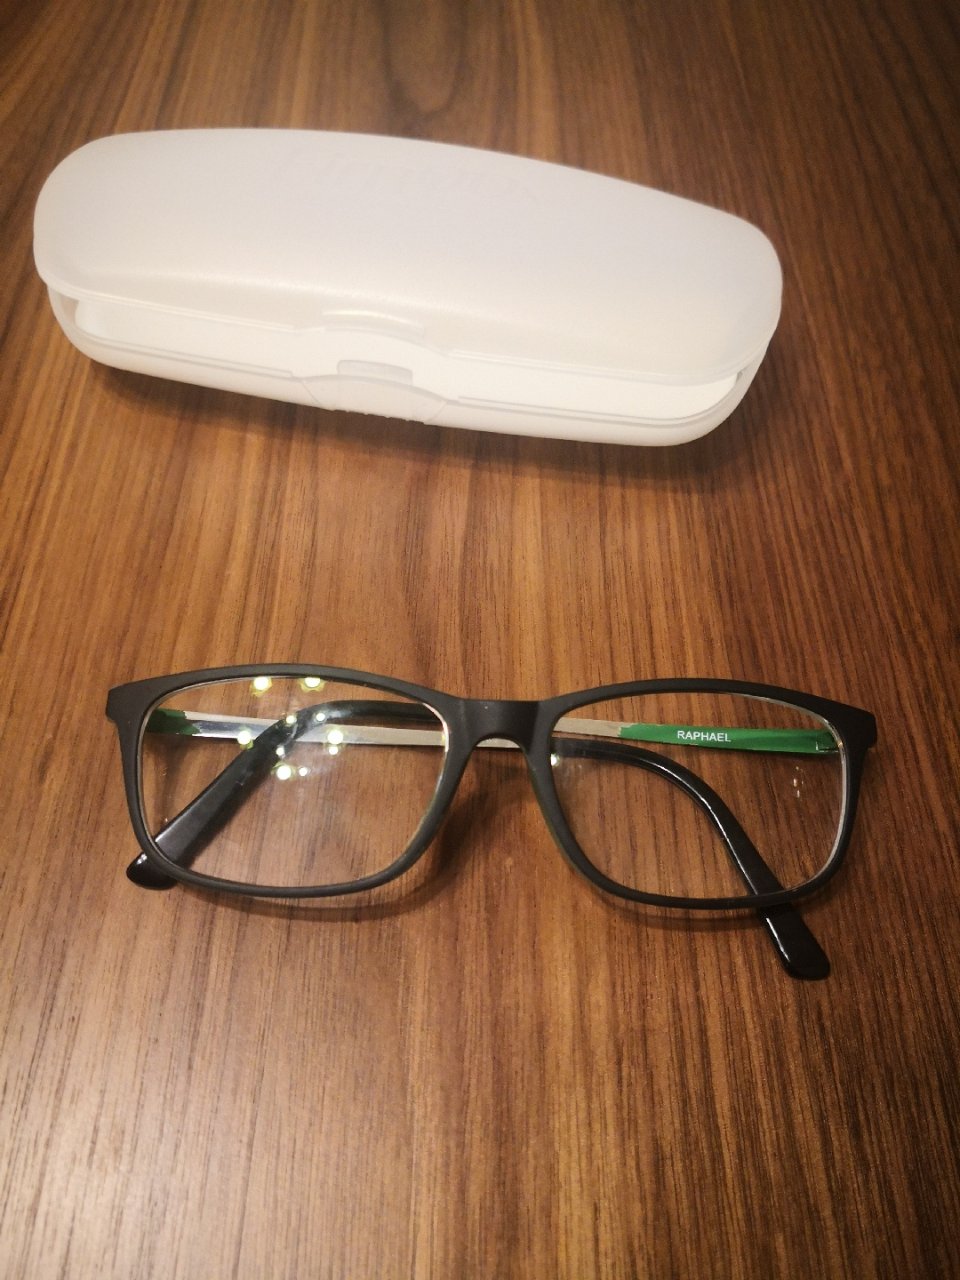 舍15 旧眼镜